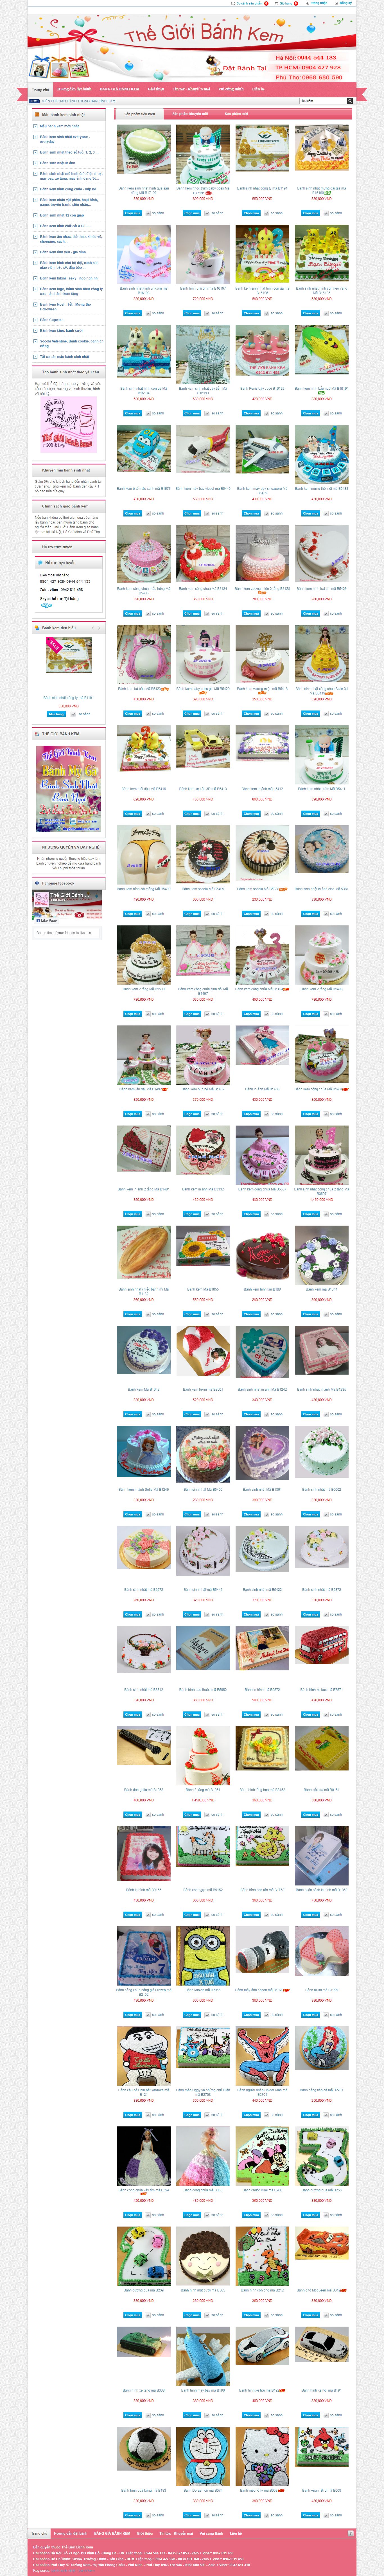 Thiết kế Website bánh kẹo - thegioibanhkem.com.vn